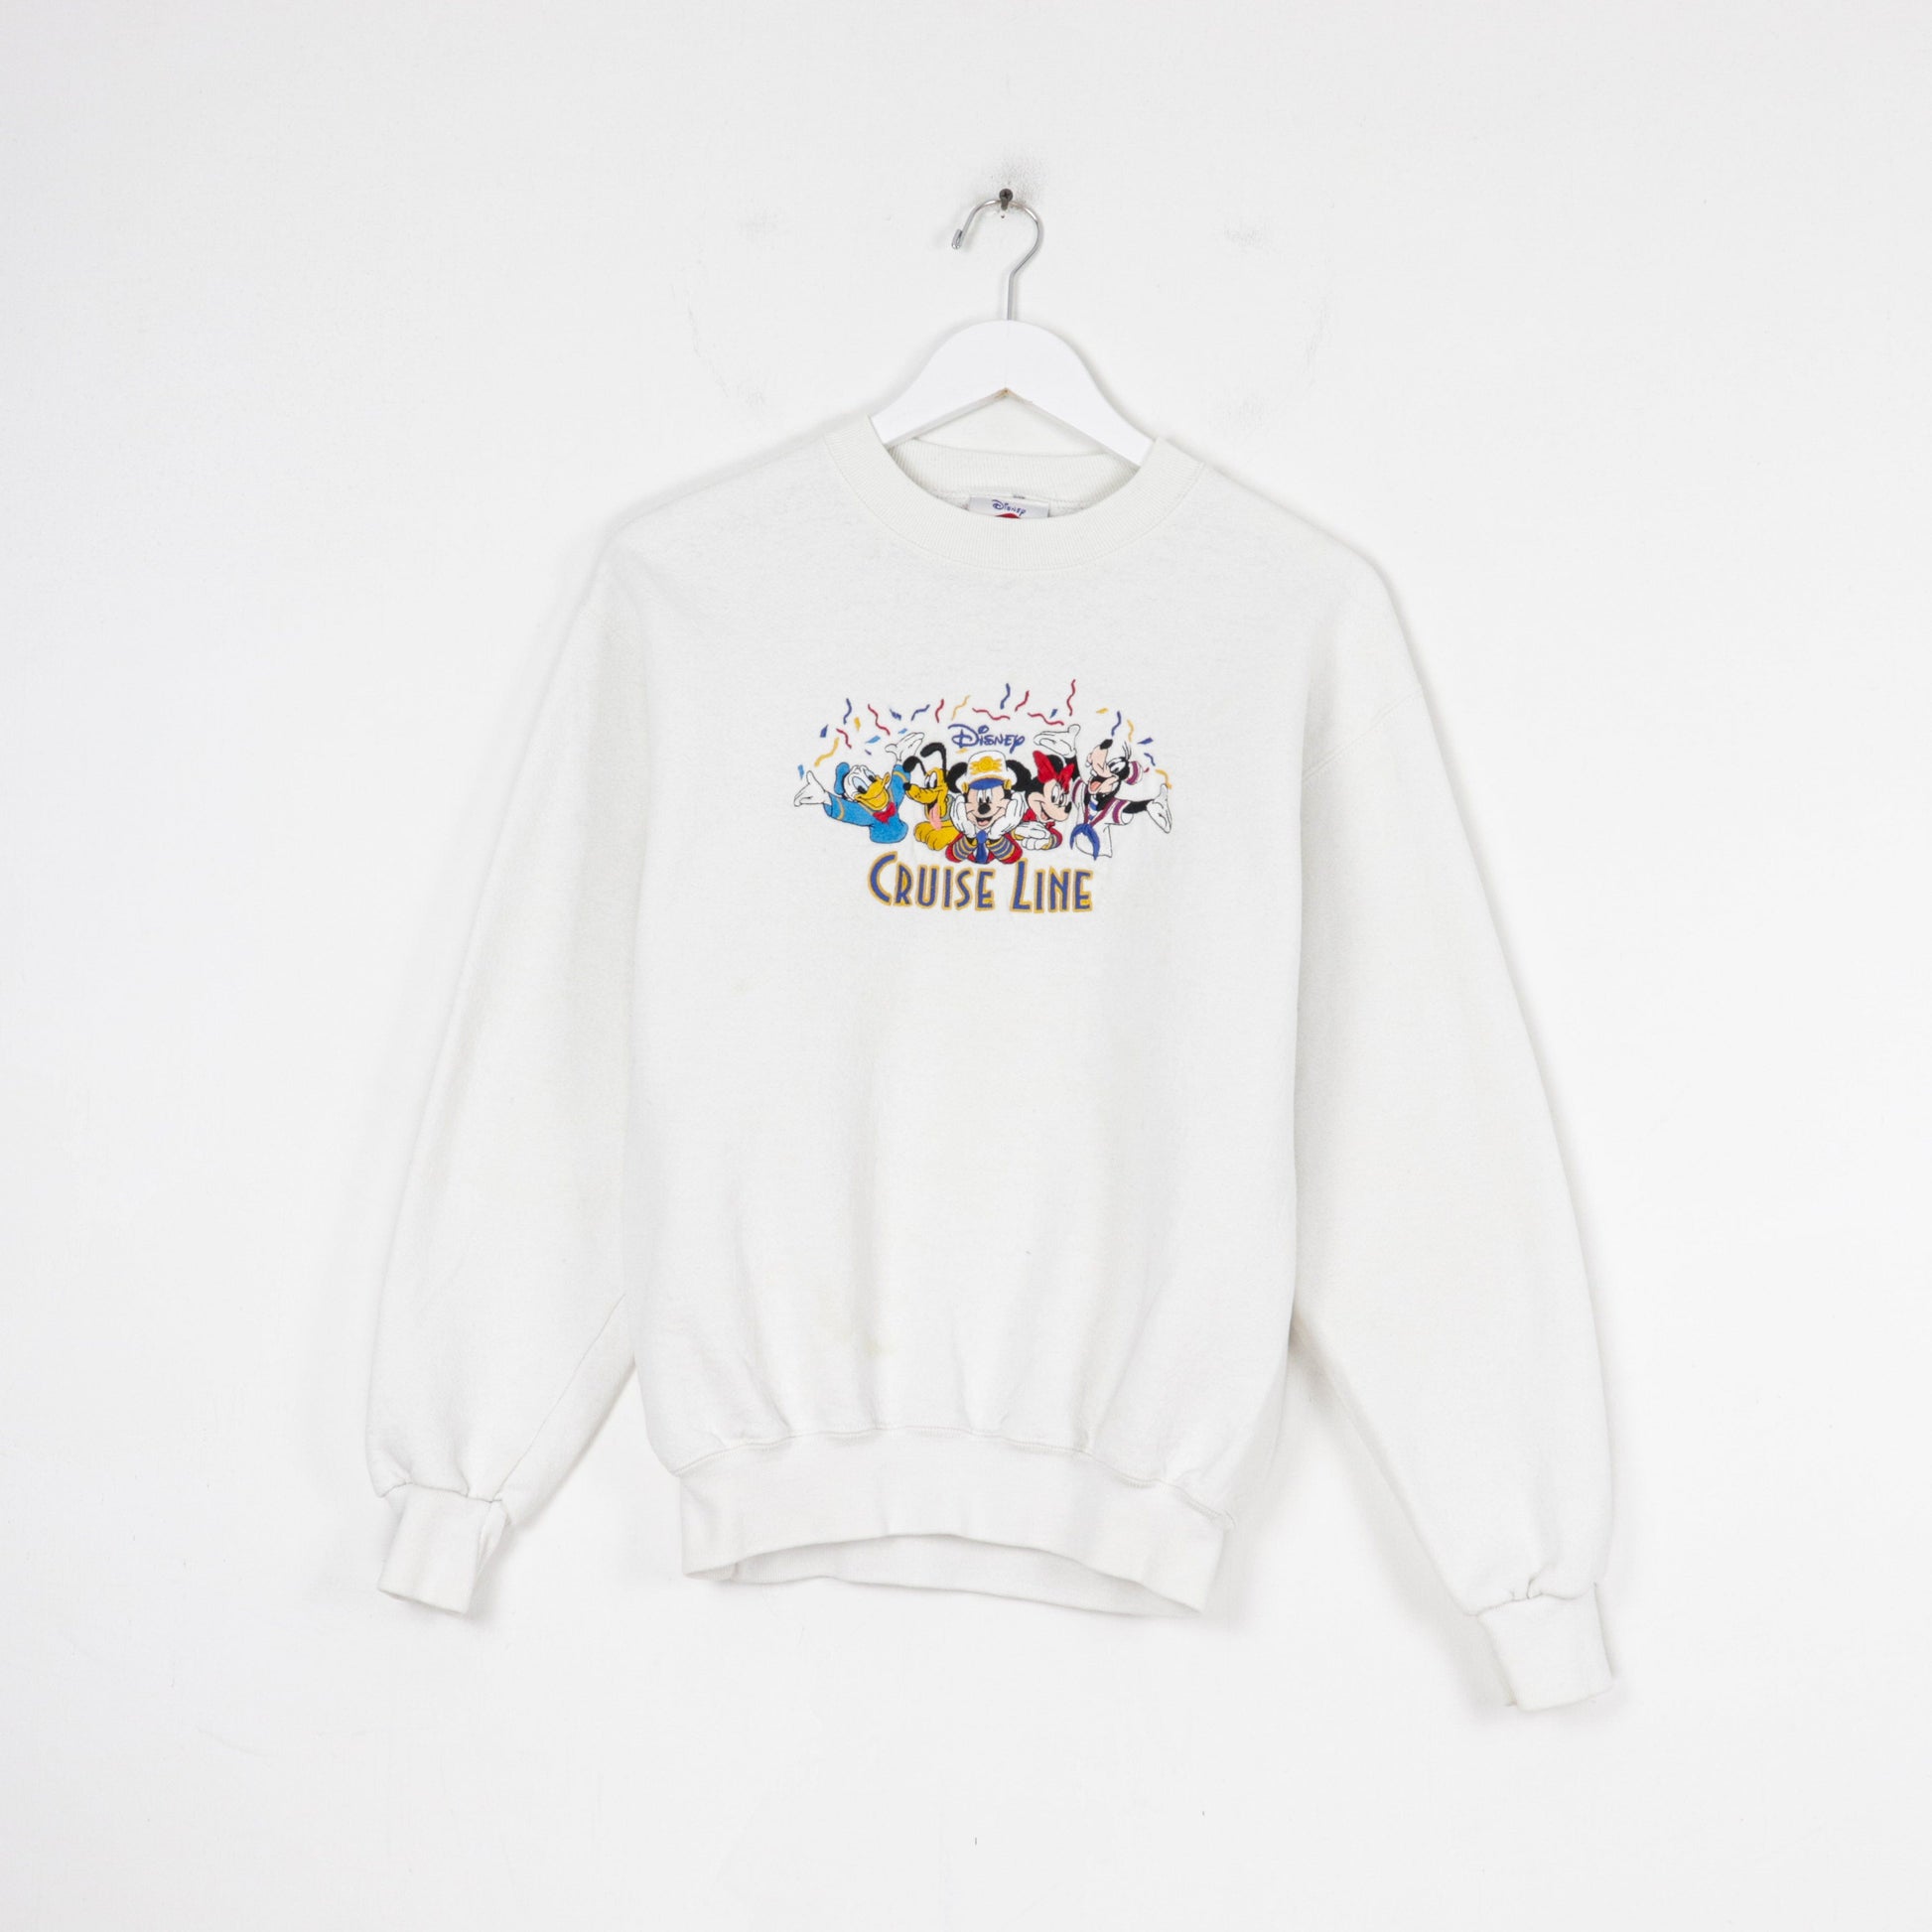 Other Sweatshirts & Hoodies Vintage Disney Cruise Line Sweatshirt Size Small